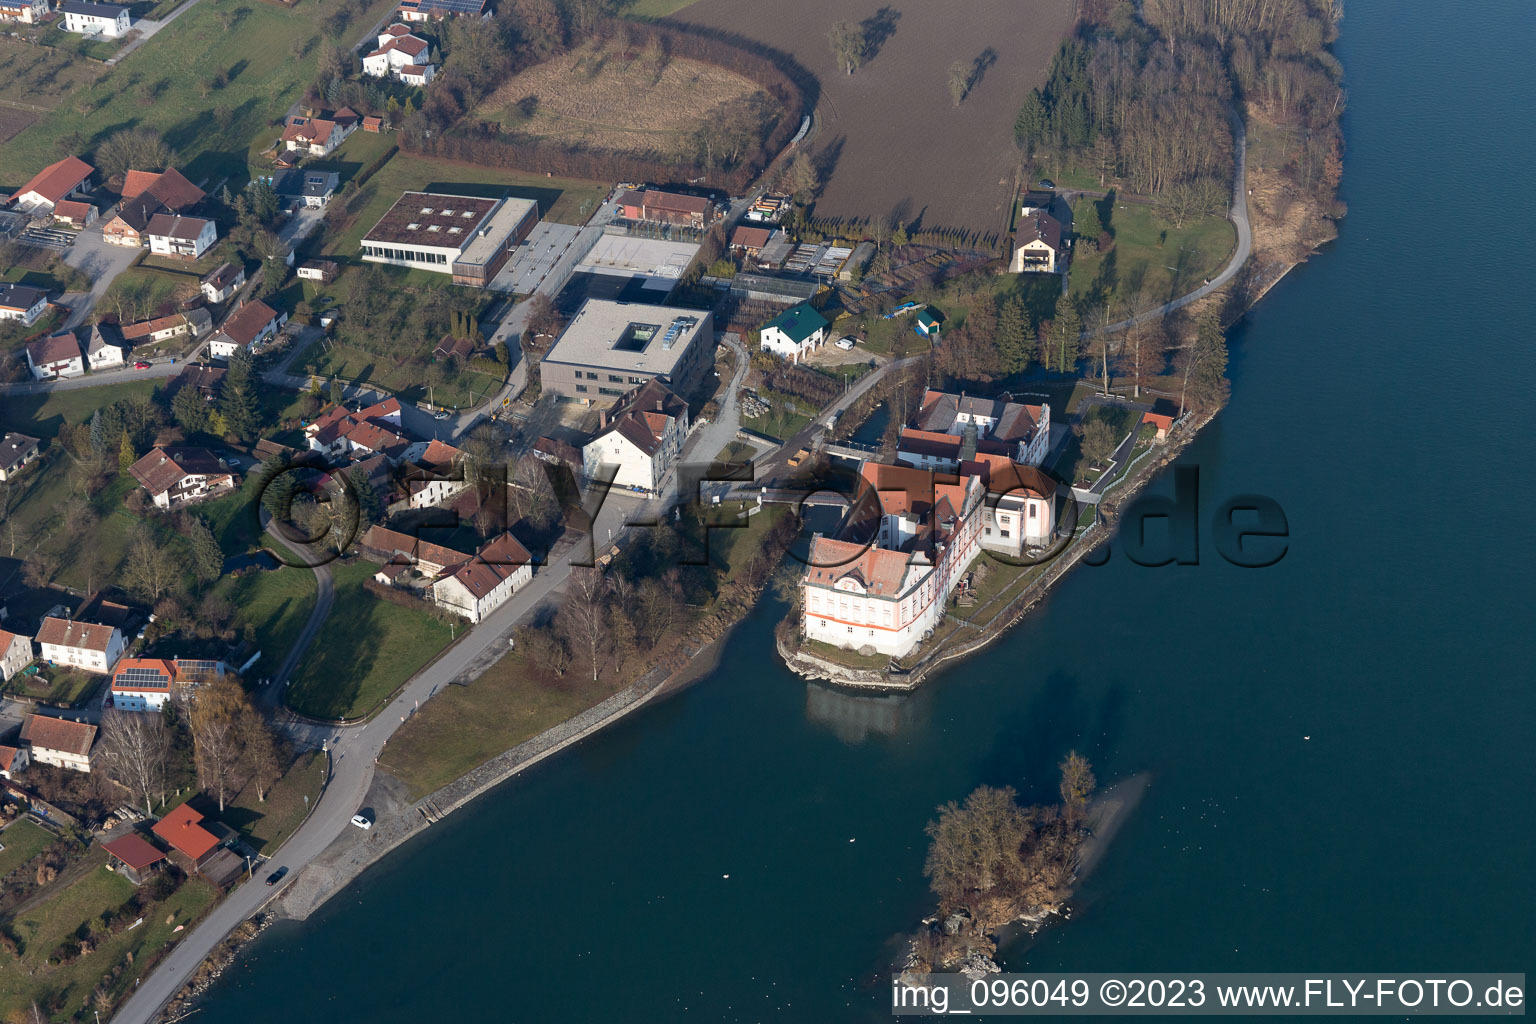 Neuhaus am Inn in the state Bavaria, Germany viewn from the air